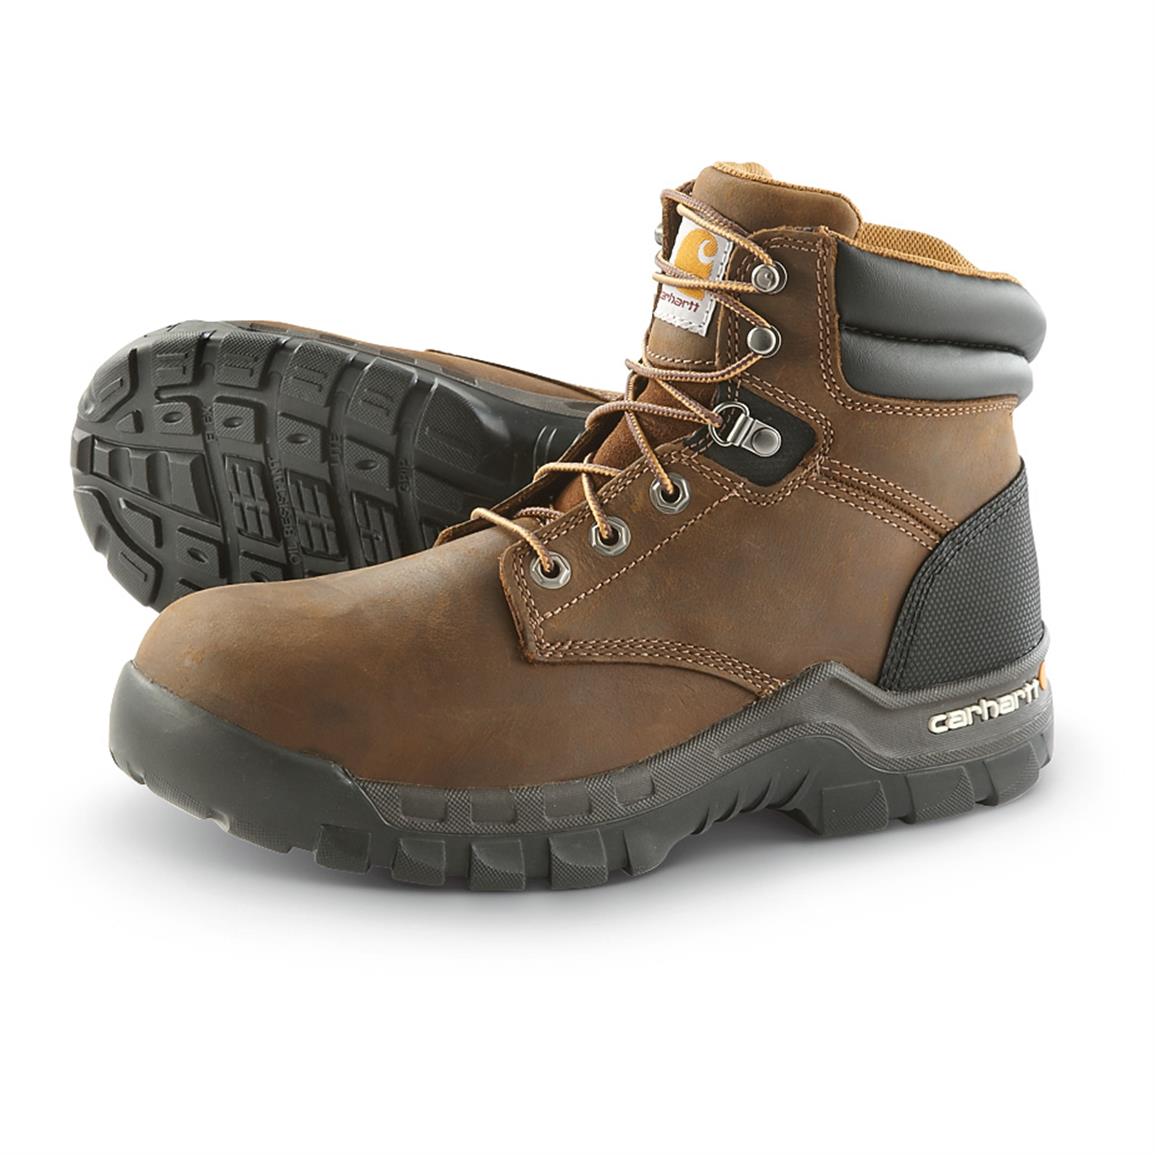 Carhartt Men's Rugged Flex Composite Toe Work Boots, Brown - 641843 ...